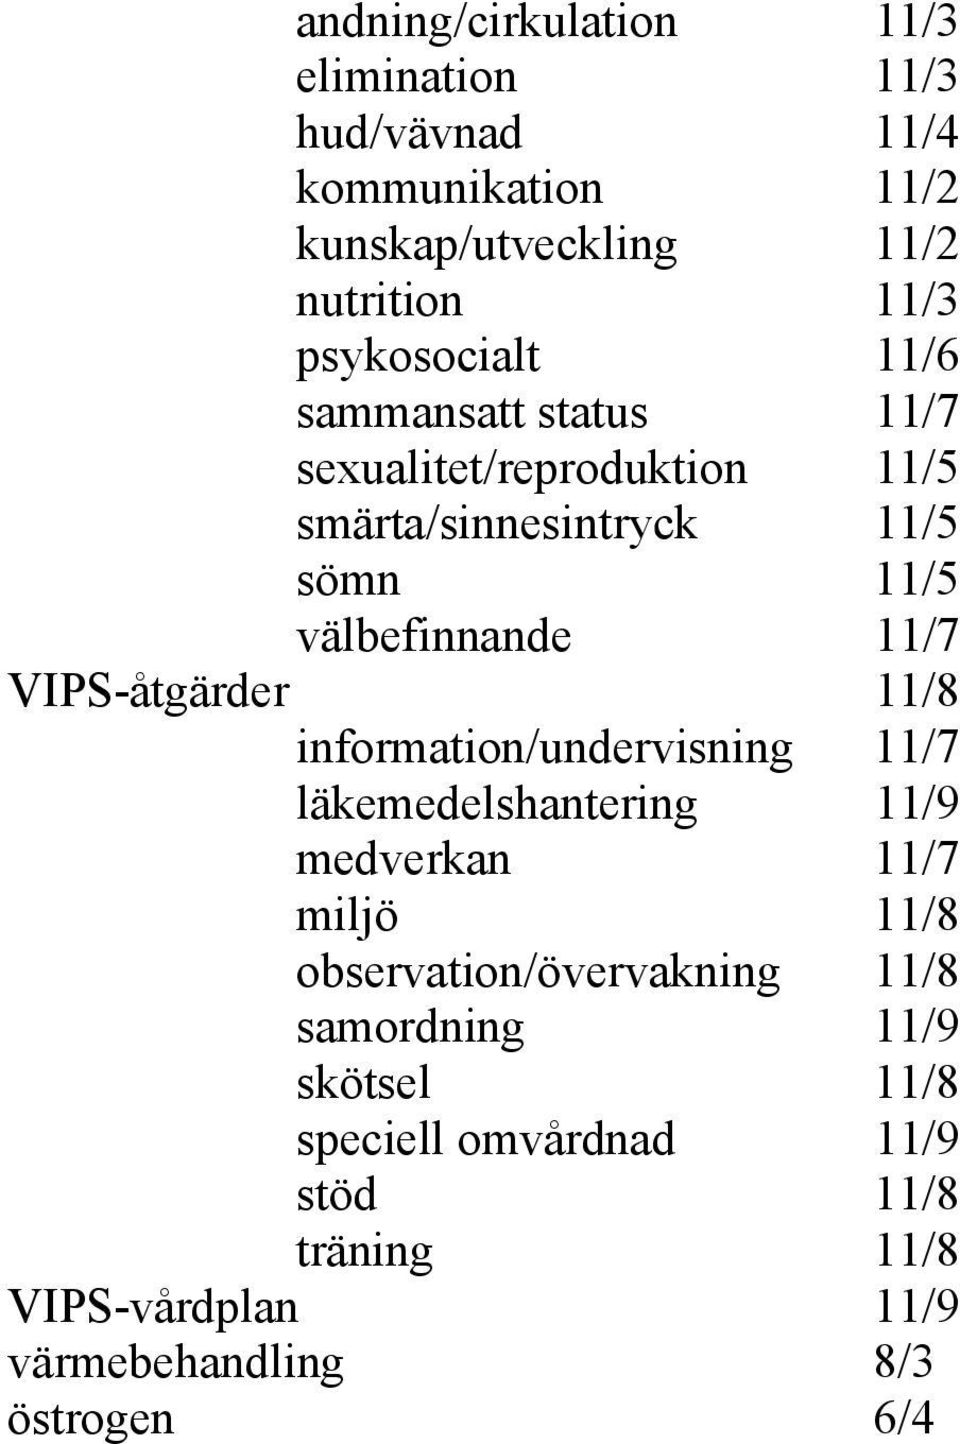 VIPS-åtgärder 11/8 information/undervisning 11/7 läkemedelshantering 11/9 medverkan 11/7 miljö 11/8 observation/övervakning